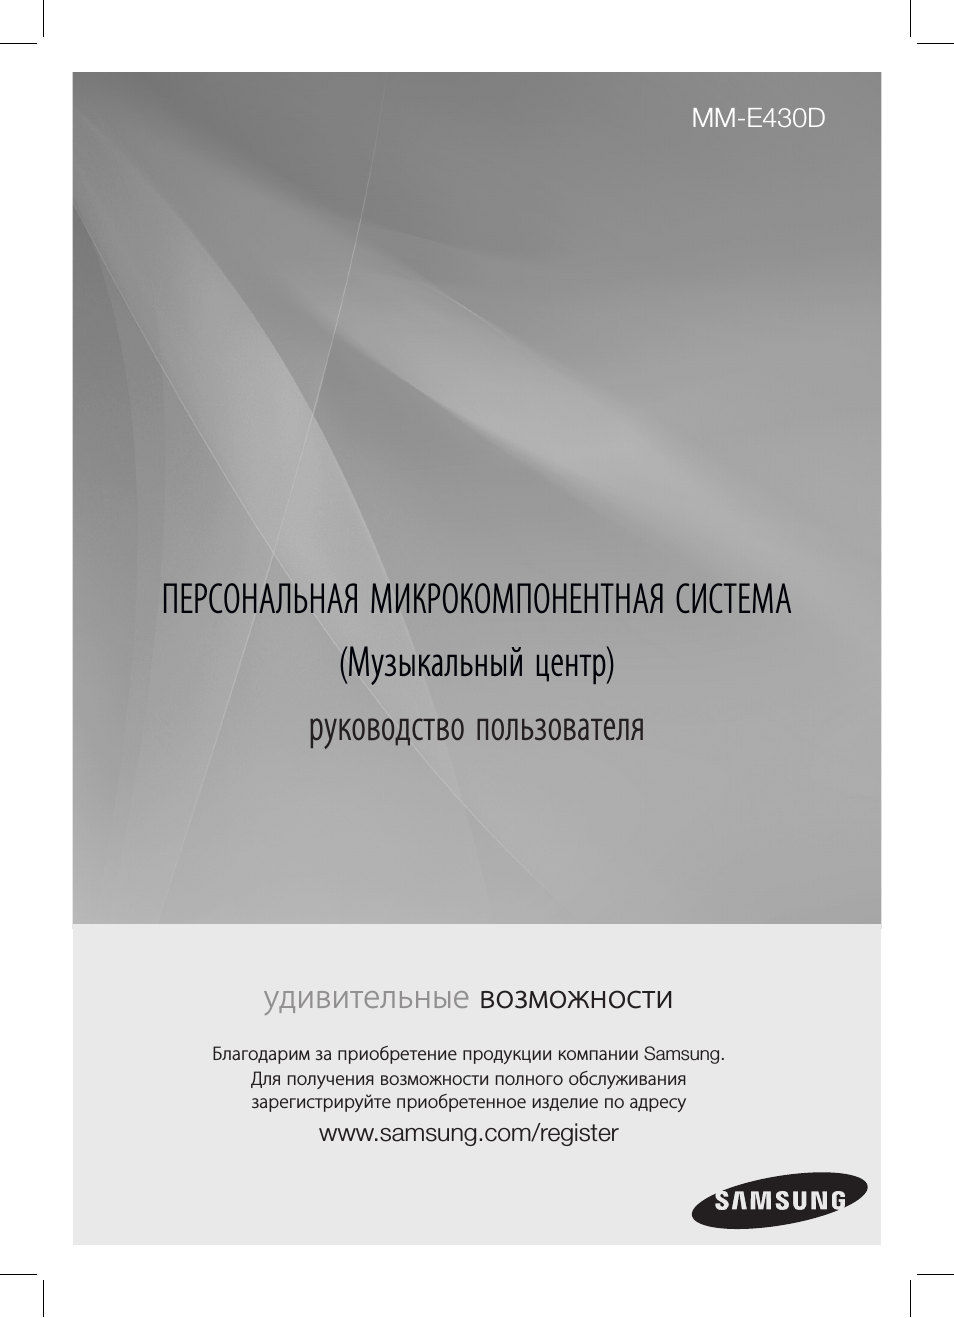 Инструкция по эксплуатации Samsung MM-E430D | 41 cтраница